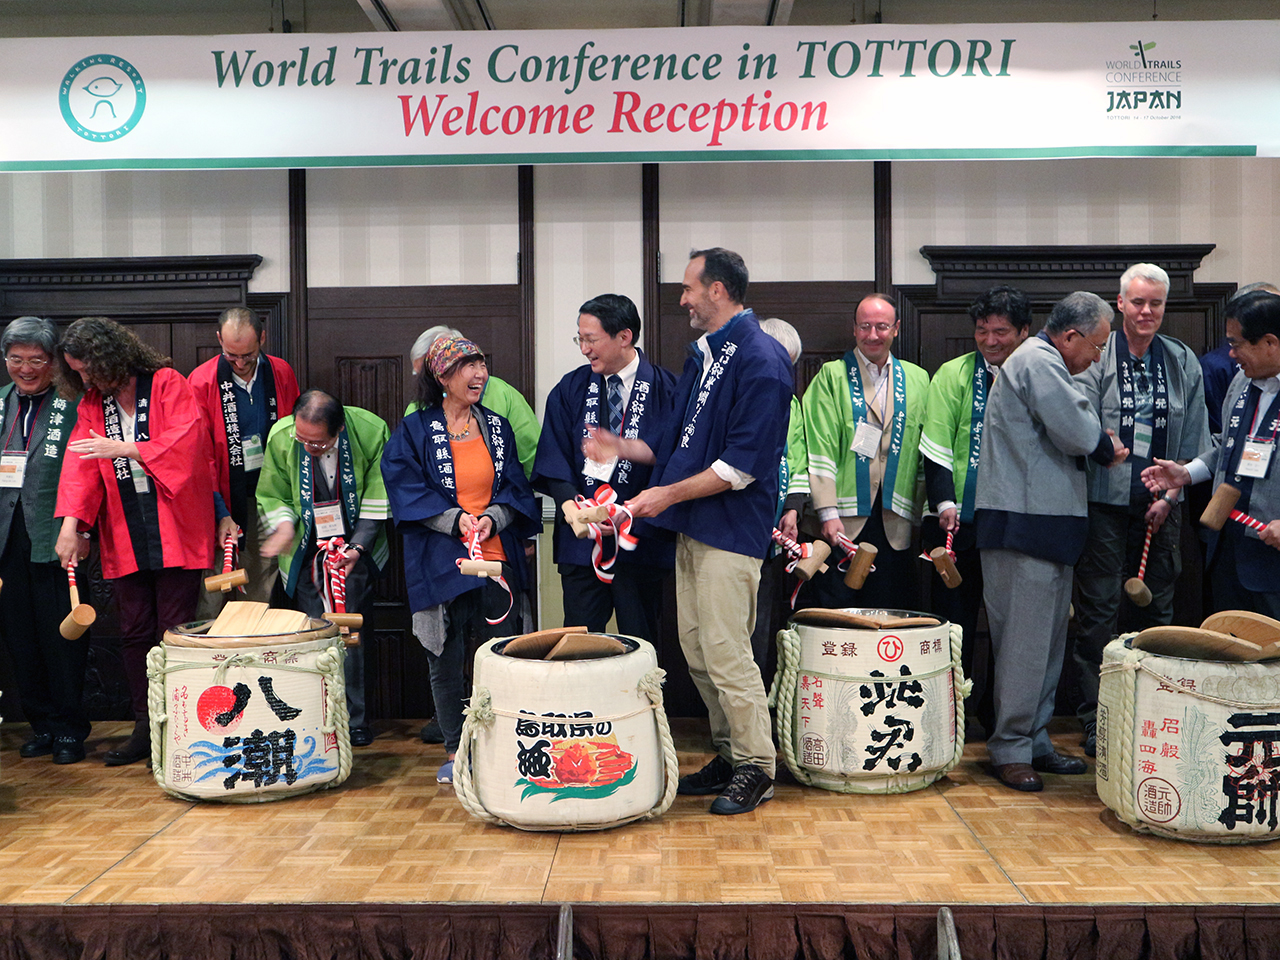 14일 저녁, 월드 트레일즈 컨퍼런스 개최를 축하하는 리셉션이 돗토리현 구라요시에서 열렸다.